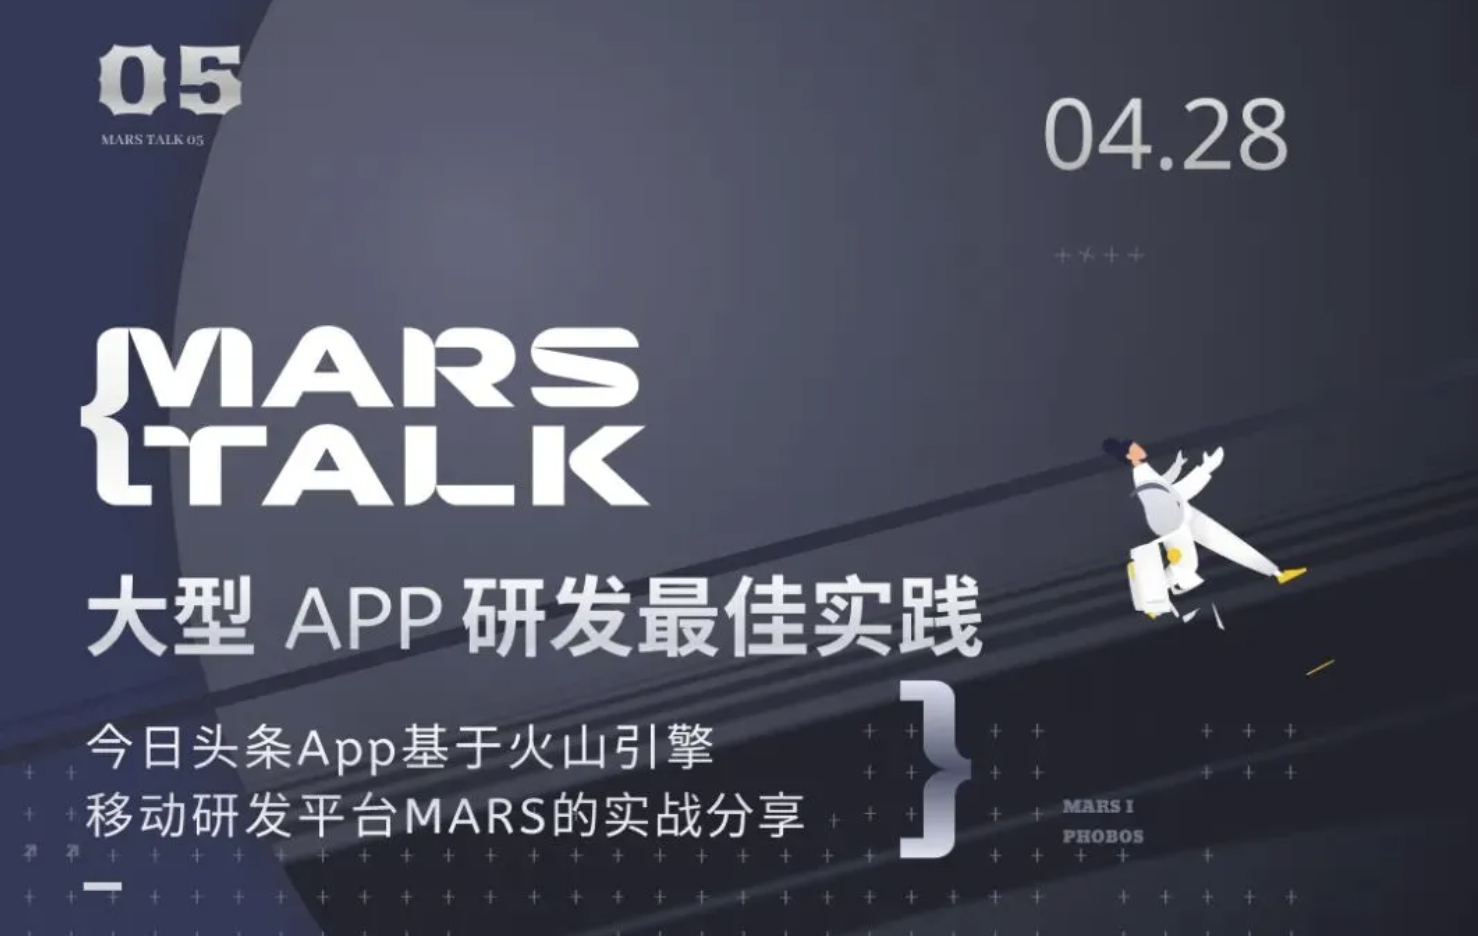 【MARS TALK 05】今日头条 App 基于火山引擎MARS研发流程最佳实践